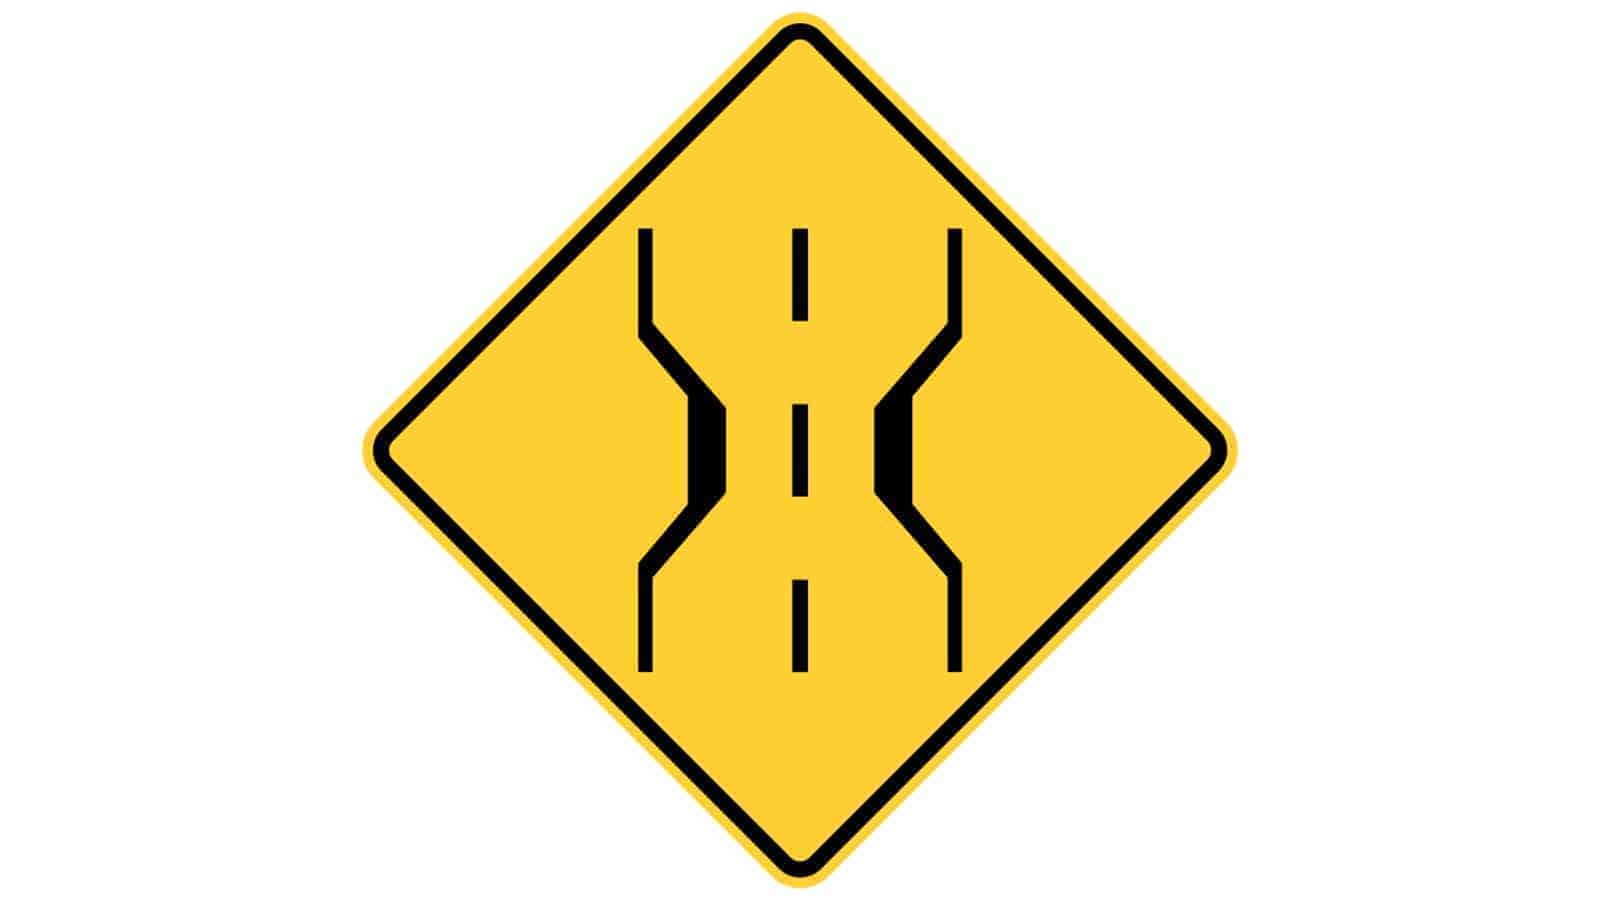 Warning sign narrow bridge ahead